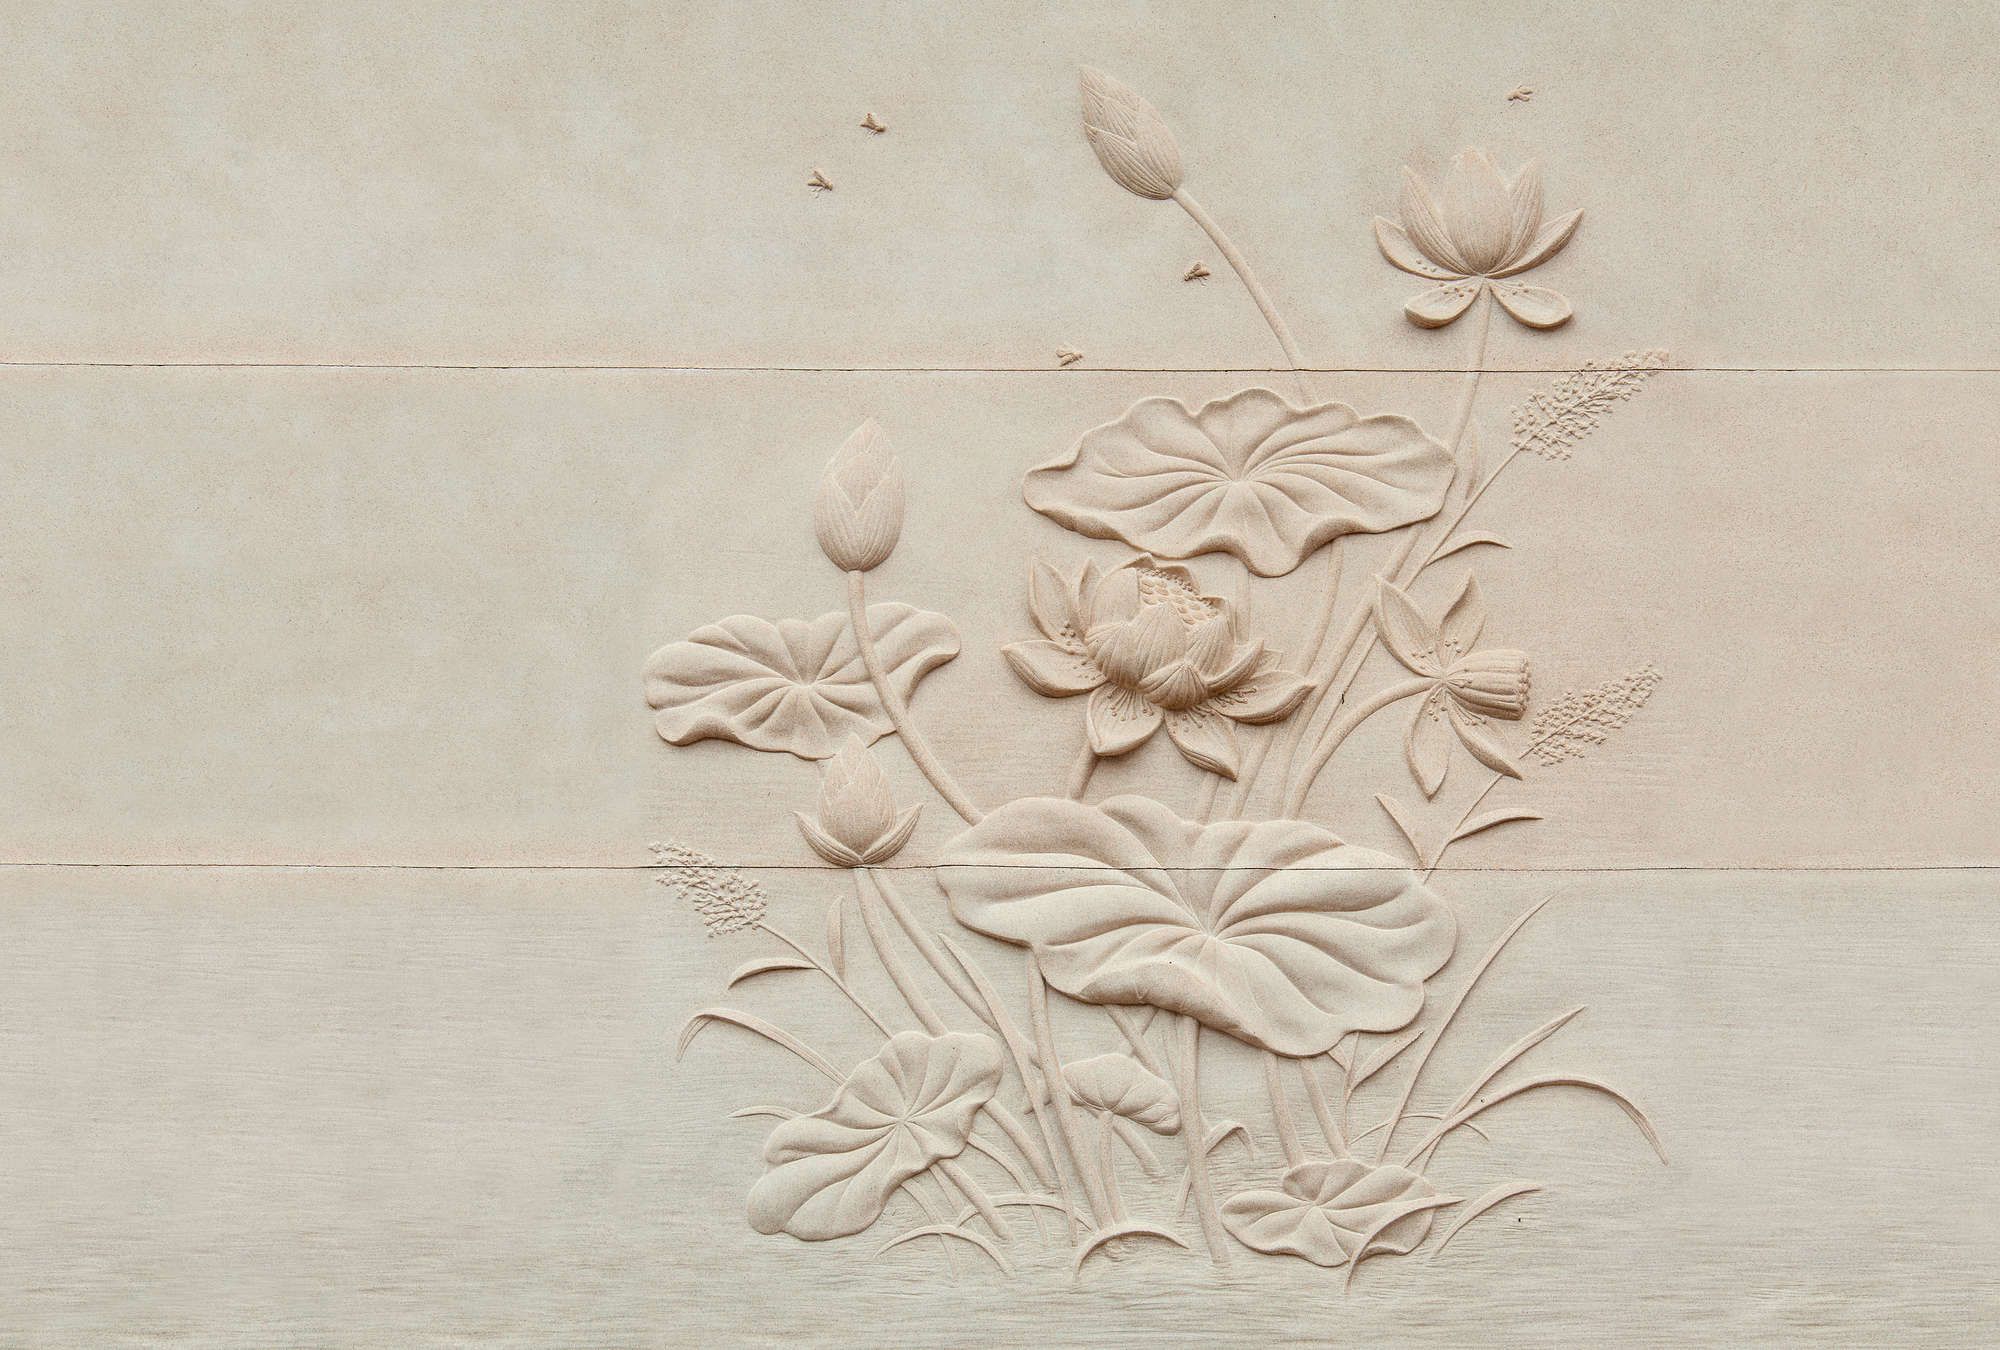             Digital behang »fiore« - Bloemrijkreliëf op betonstructuur - Glad, licht glanzend premium vliesweefsel
        